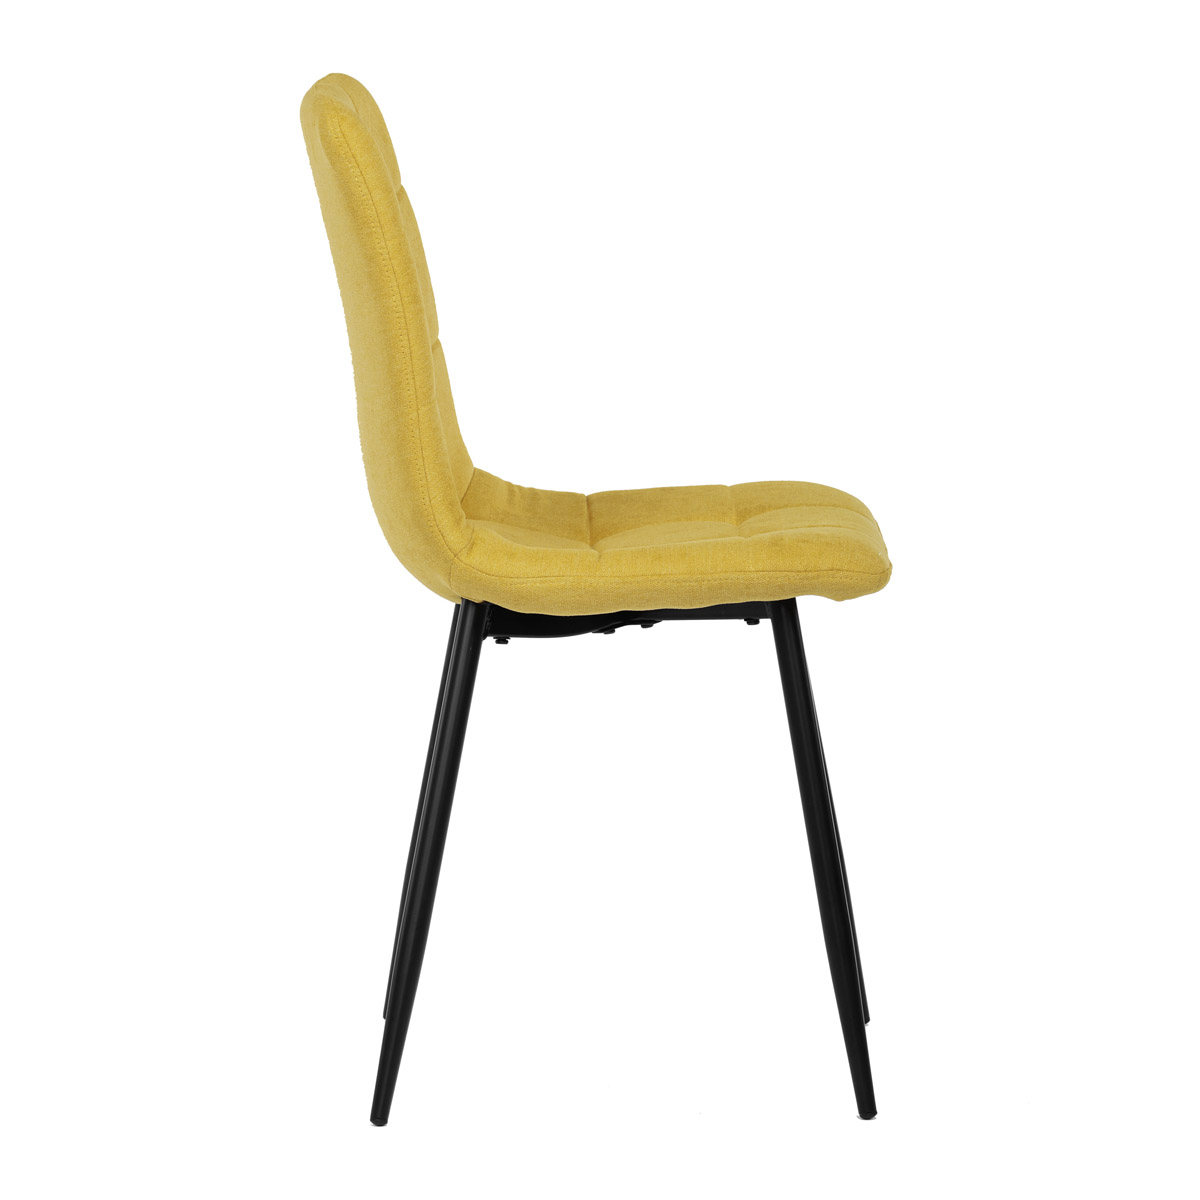 Jídelní židle, potah žlutá látka, kovová čtyřnohá podnož, černý mat